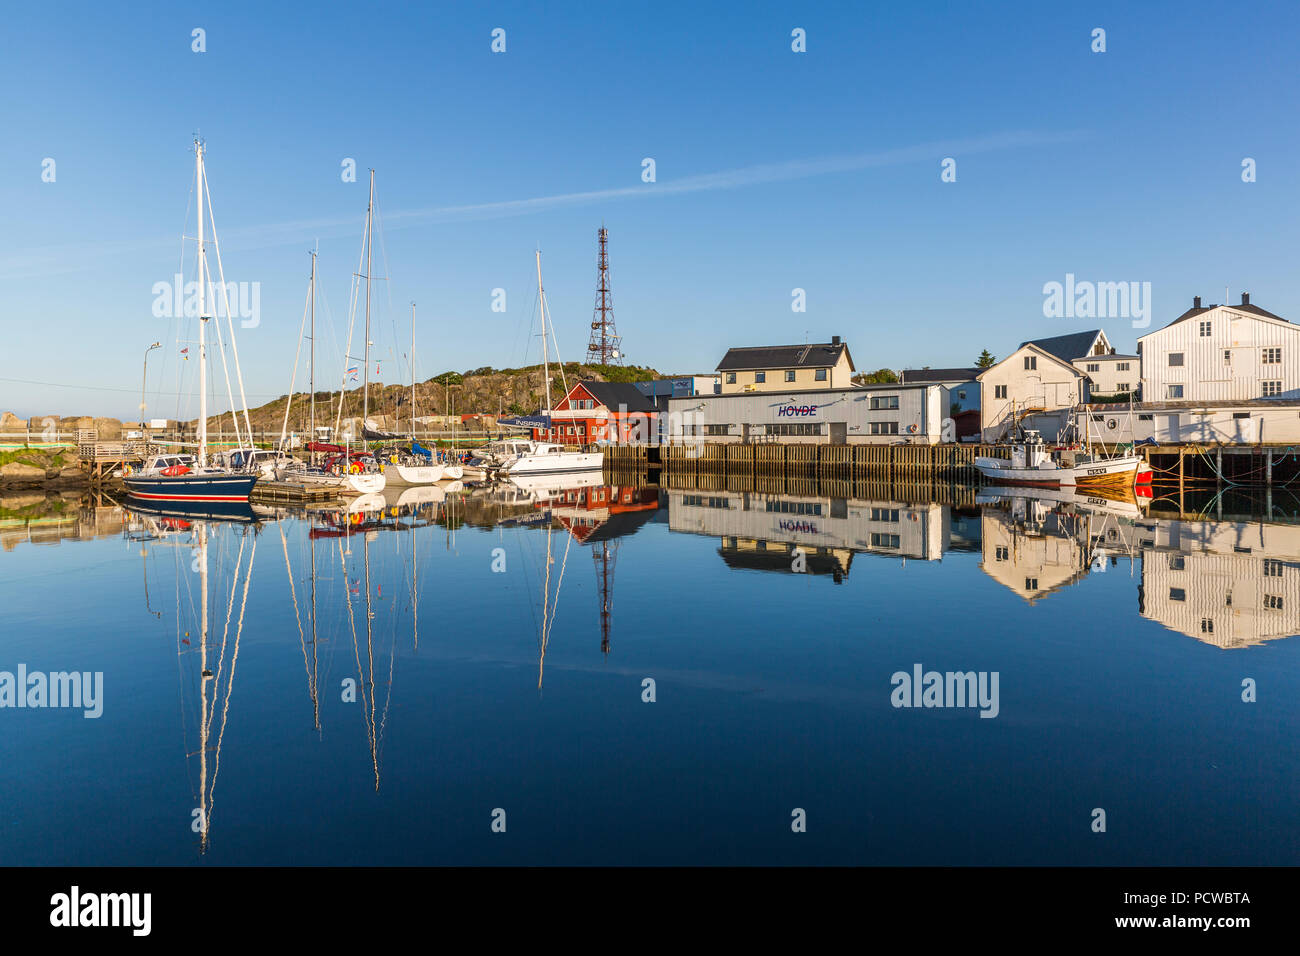 HENNINGSVAER, Norvegia - Luglio 04, 2018: bella riflessione in marina di Henningsvaer villaggio di pescatori, Norvegia Foto Stock